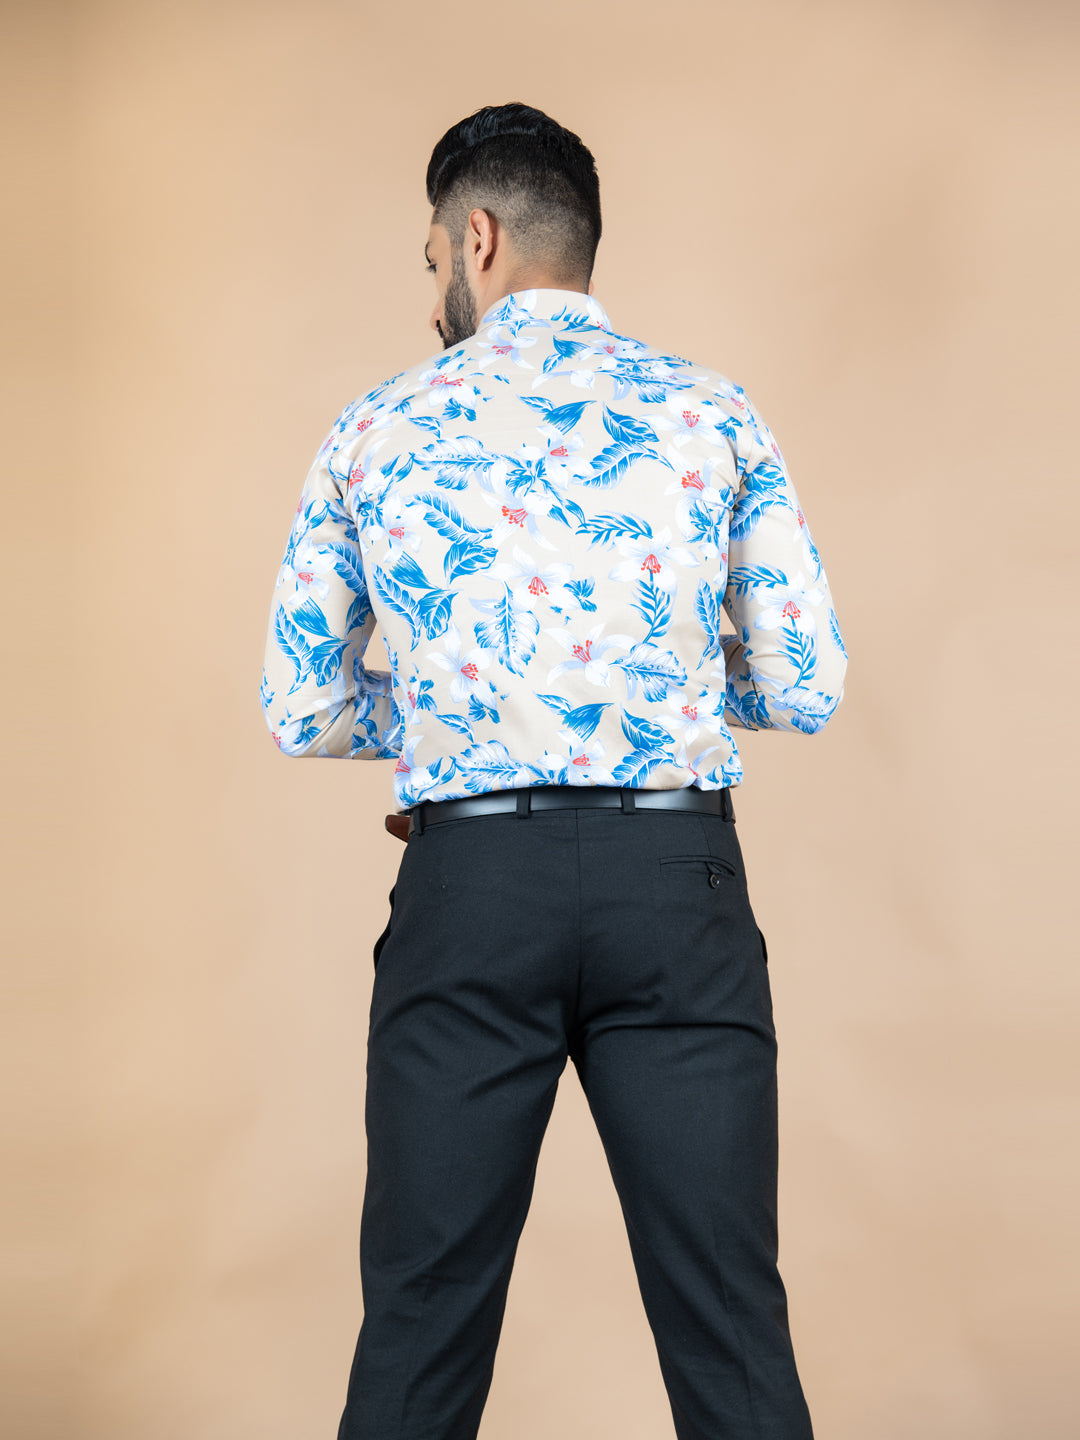 floral shirts for  men